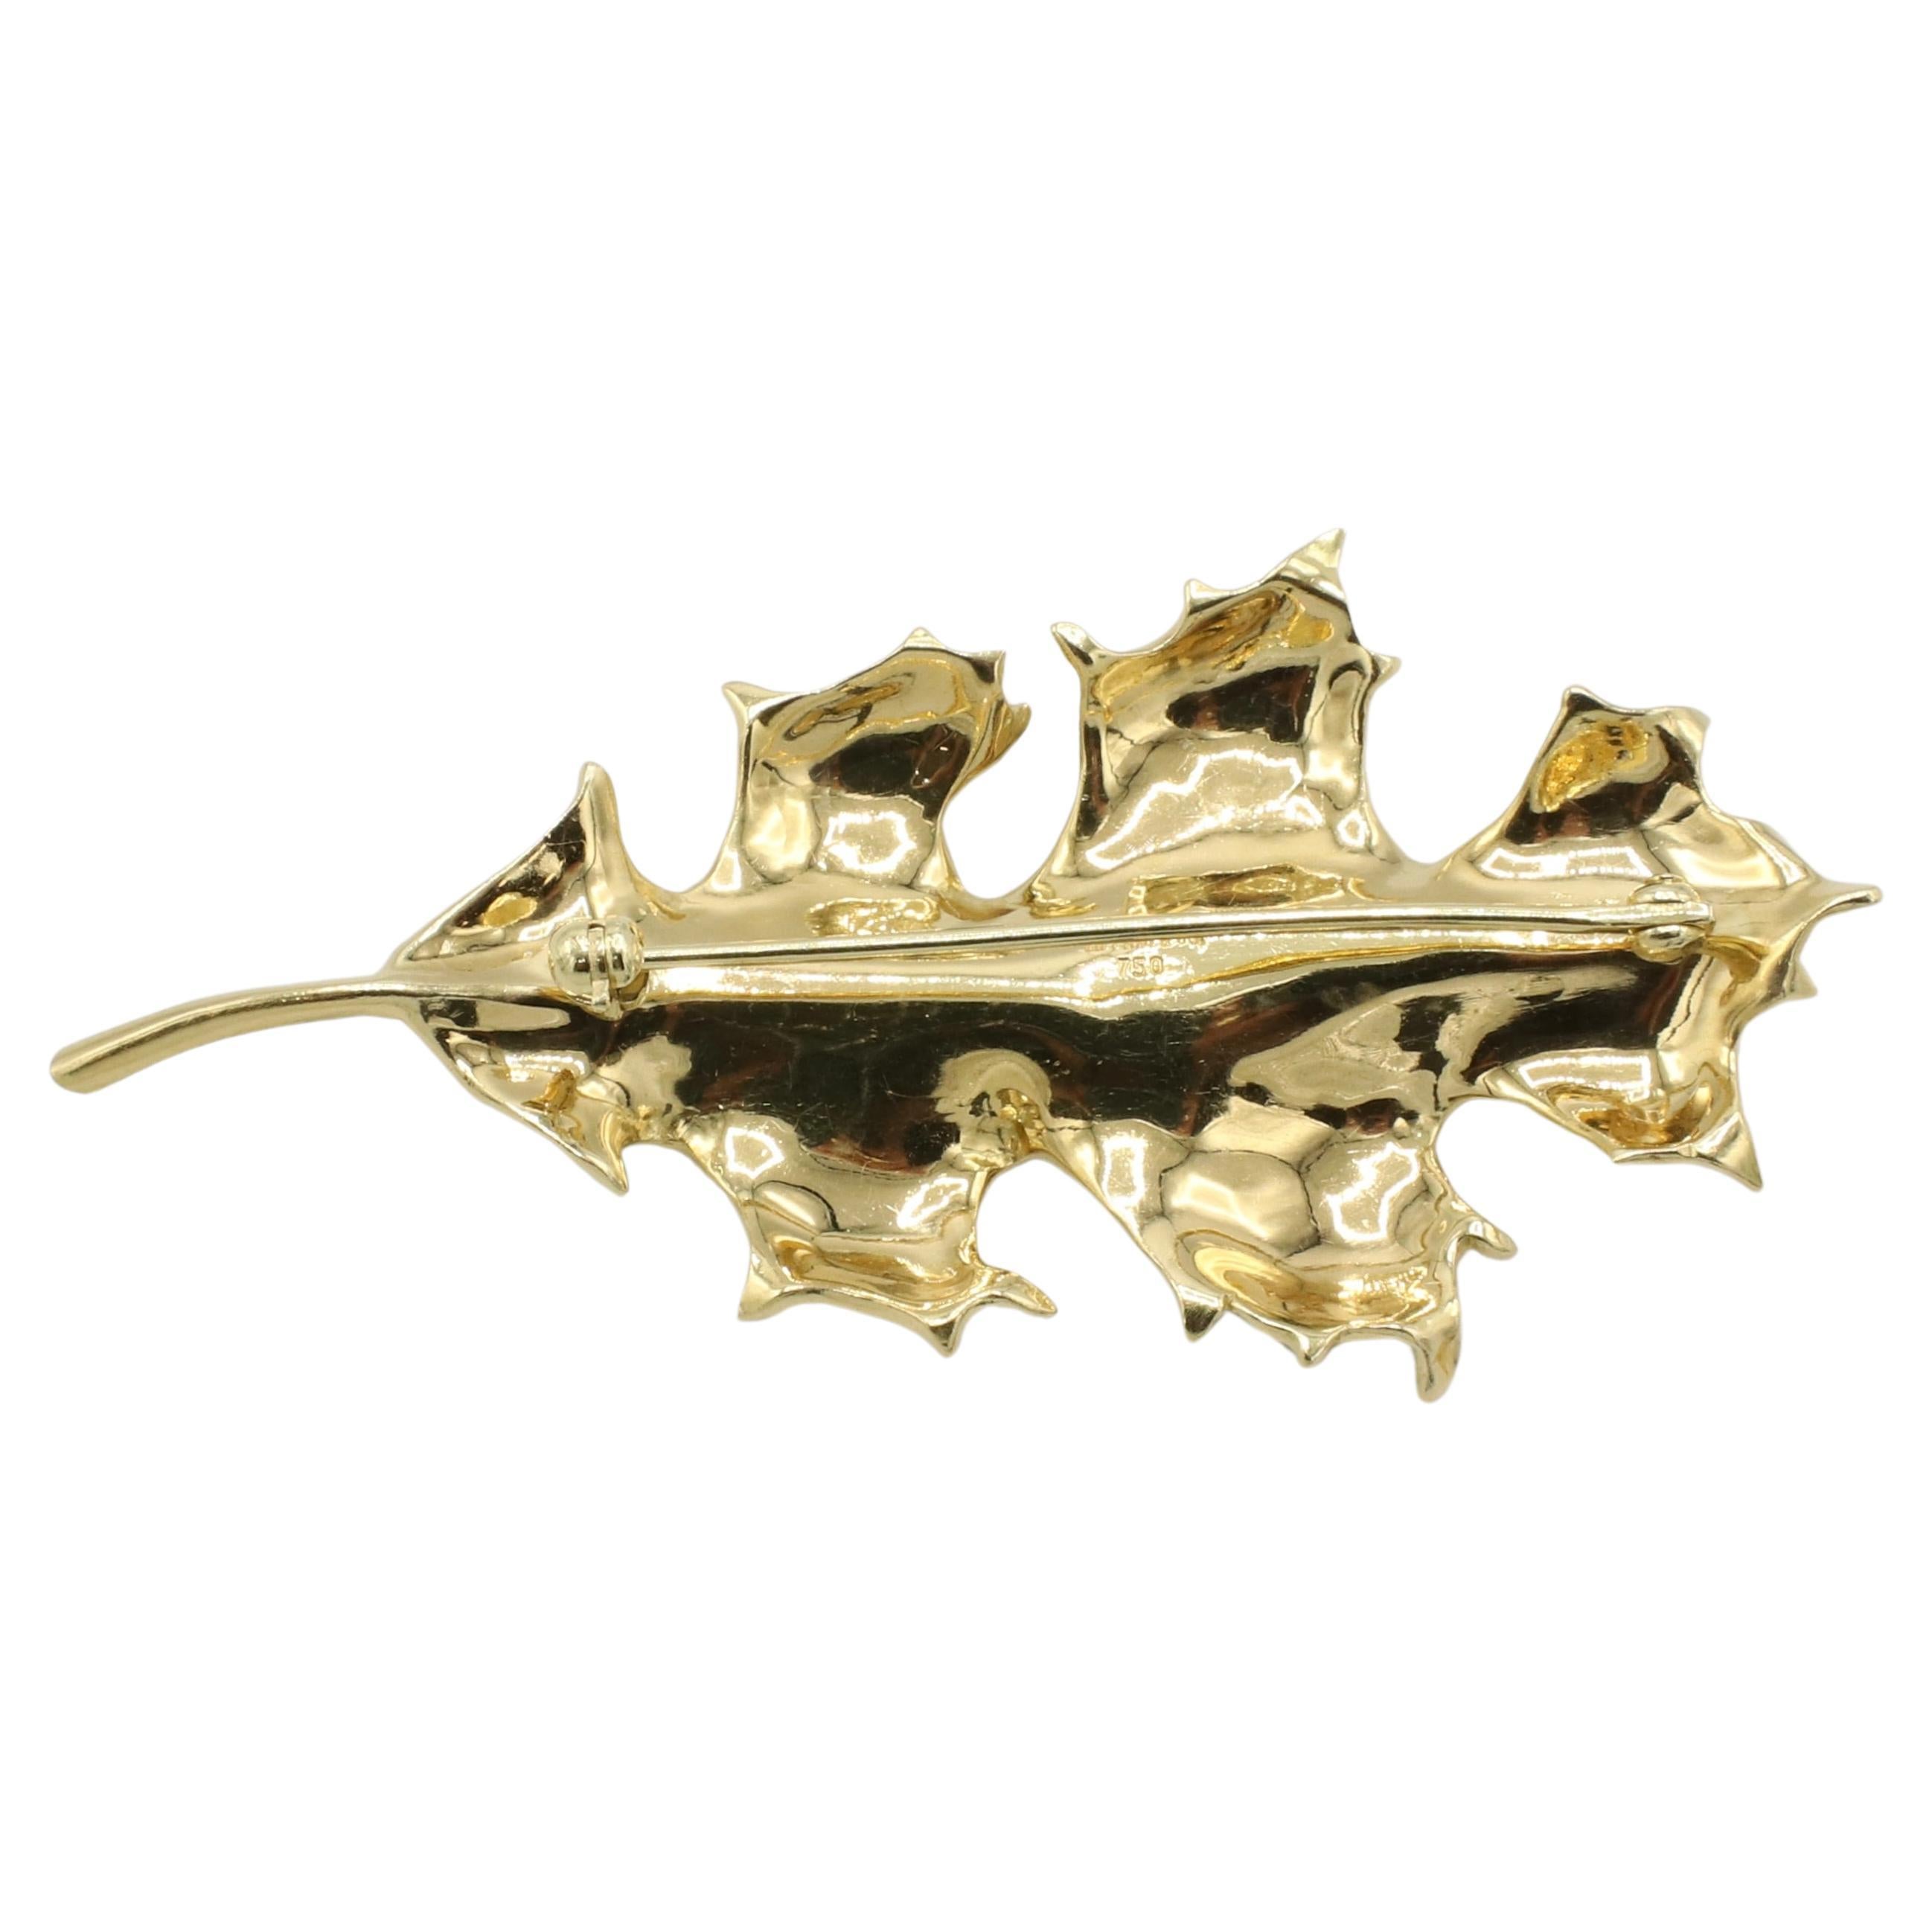 Tiffany & Co. 18 Karat Gelbgold Oak Leaf Pin Brosche 
Metall: 18k Gelbgold
Gewicht: 12,67 Gramm
Abmessungen: 61 x 30,5 mm
Unterzeichnet: Tiffany & Co. 750